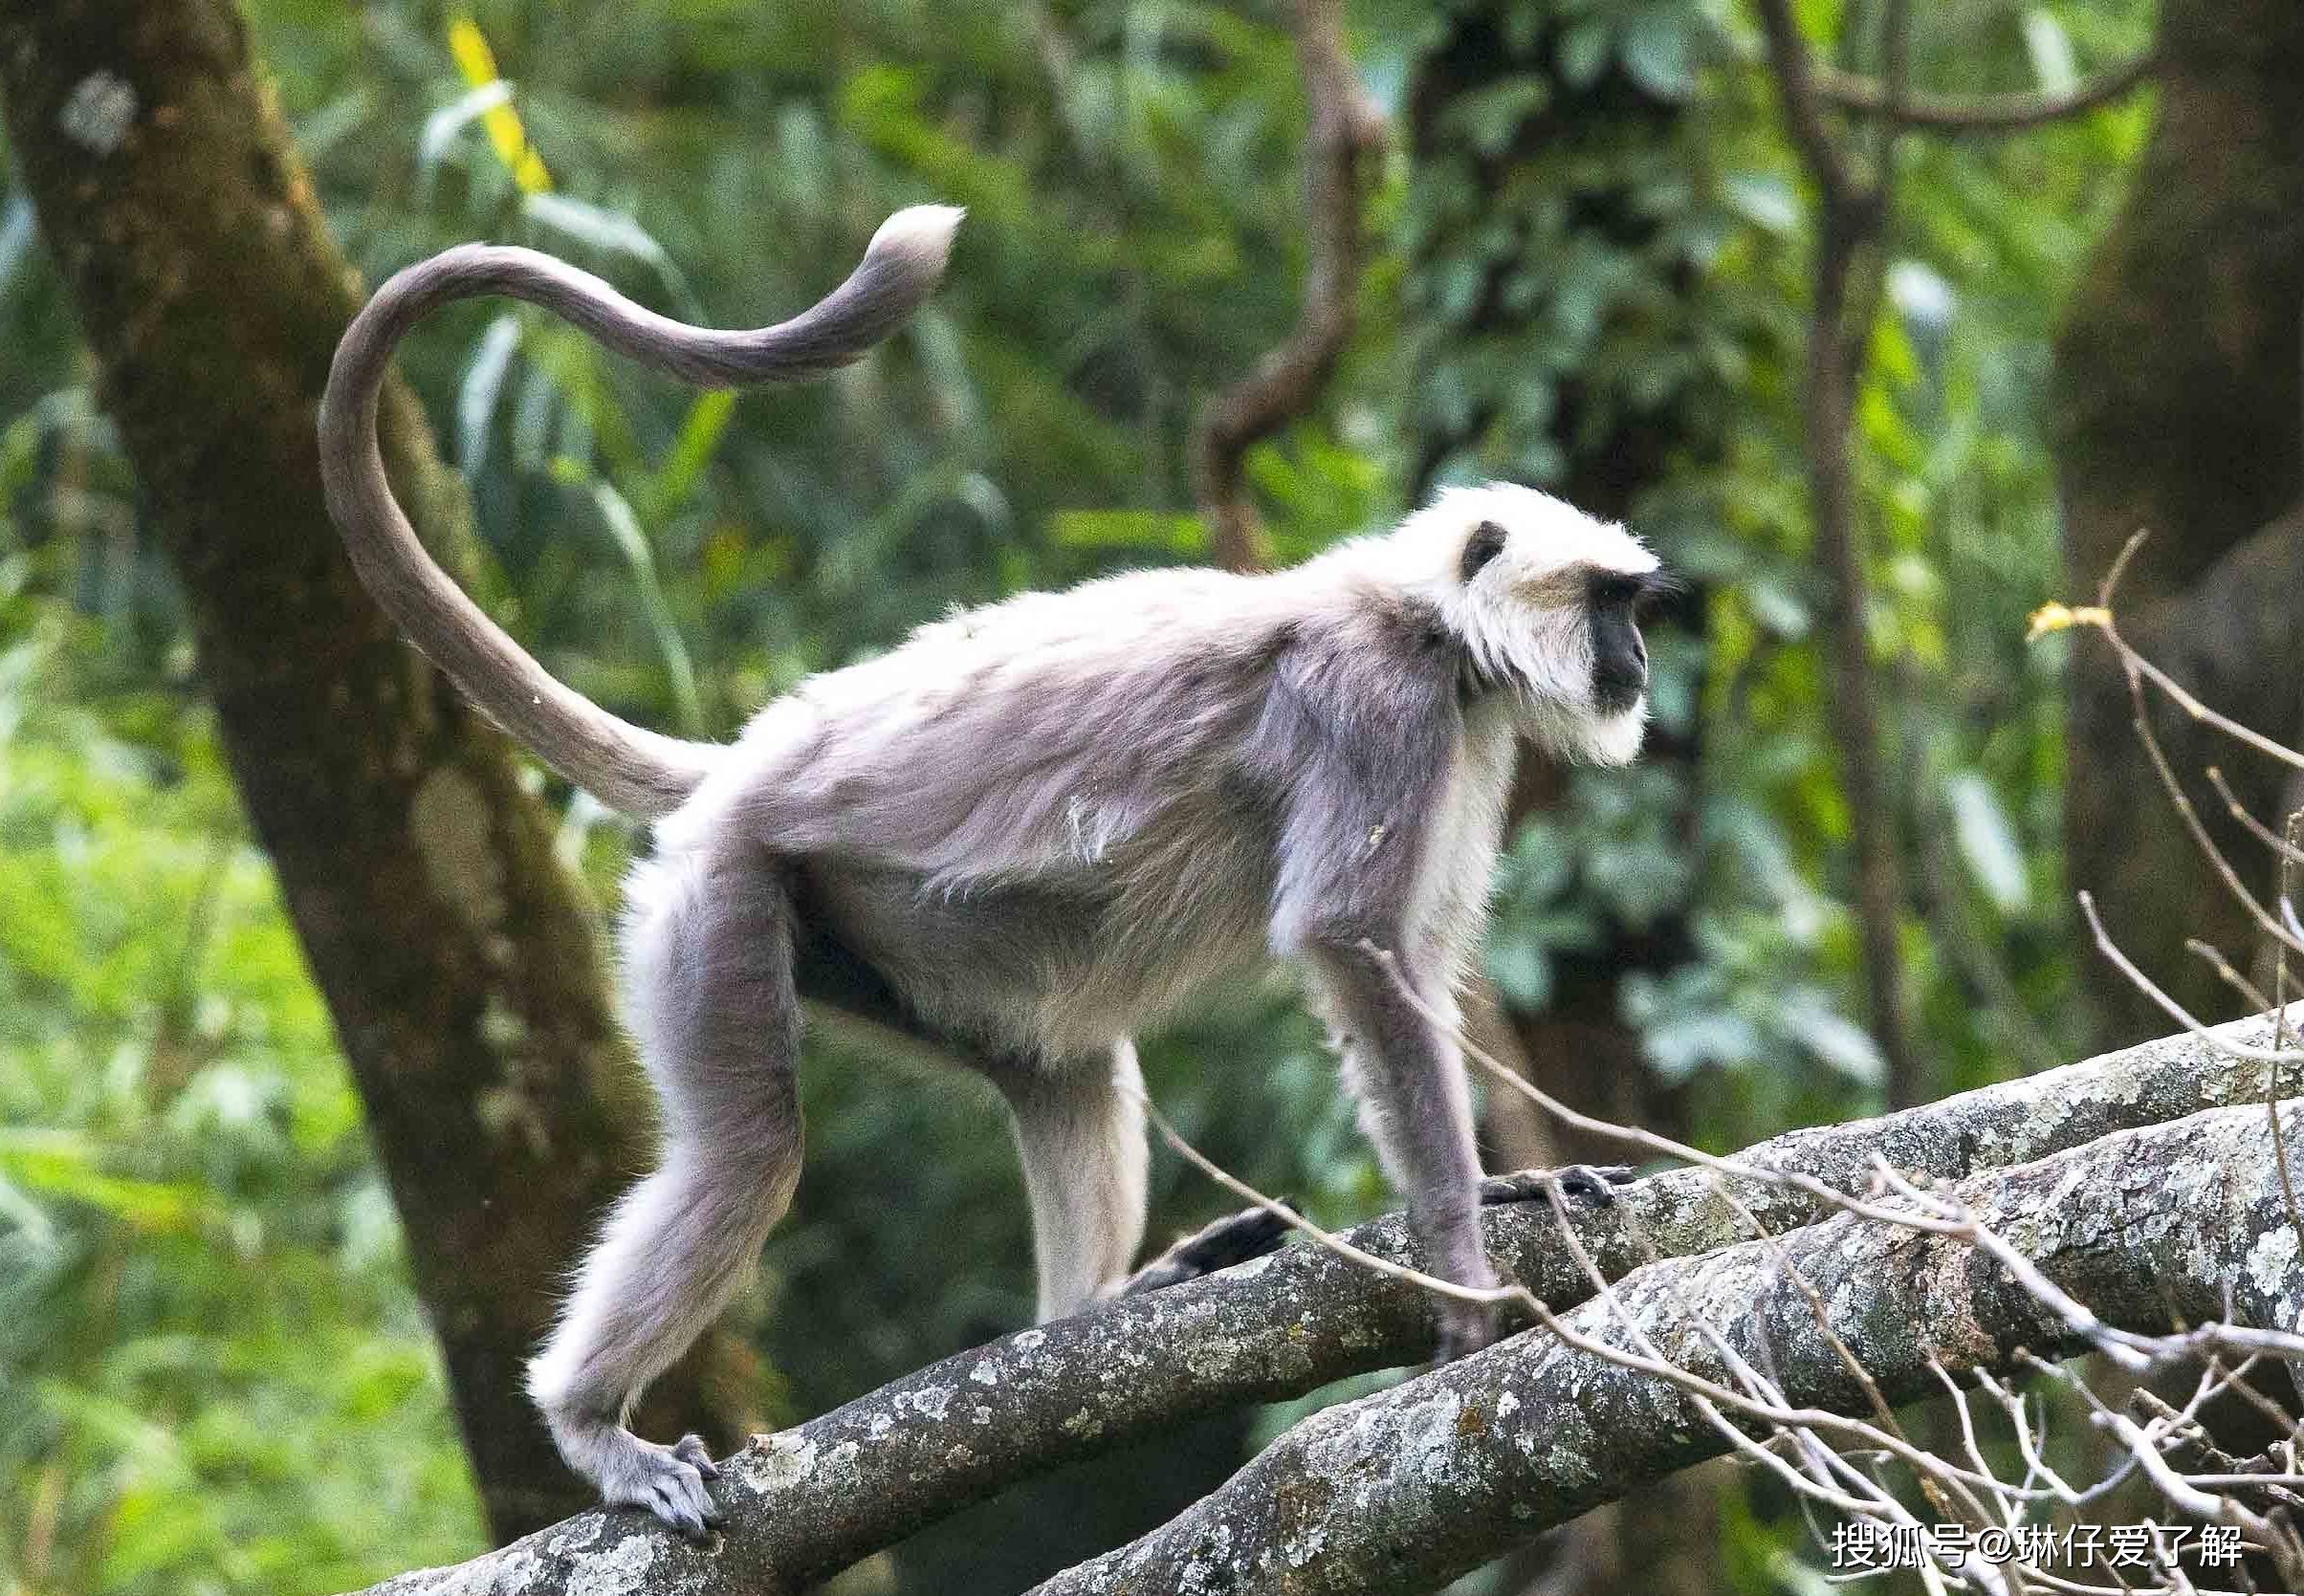 种群数量也很少,但在其有限的分布区内,这种走路举着长尾巴的大猴子却